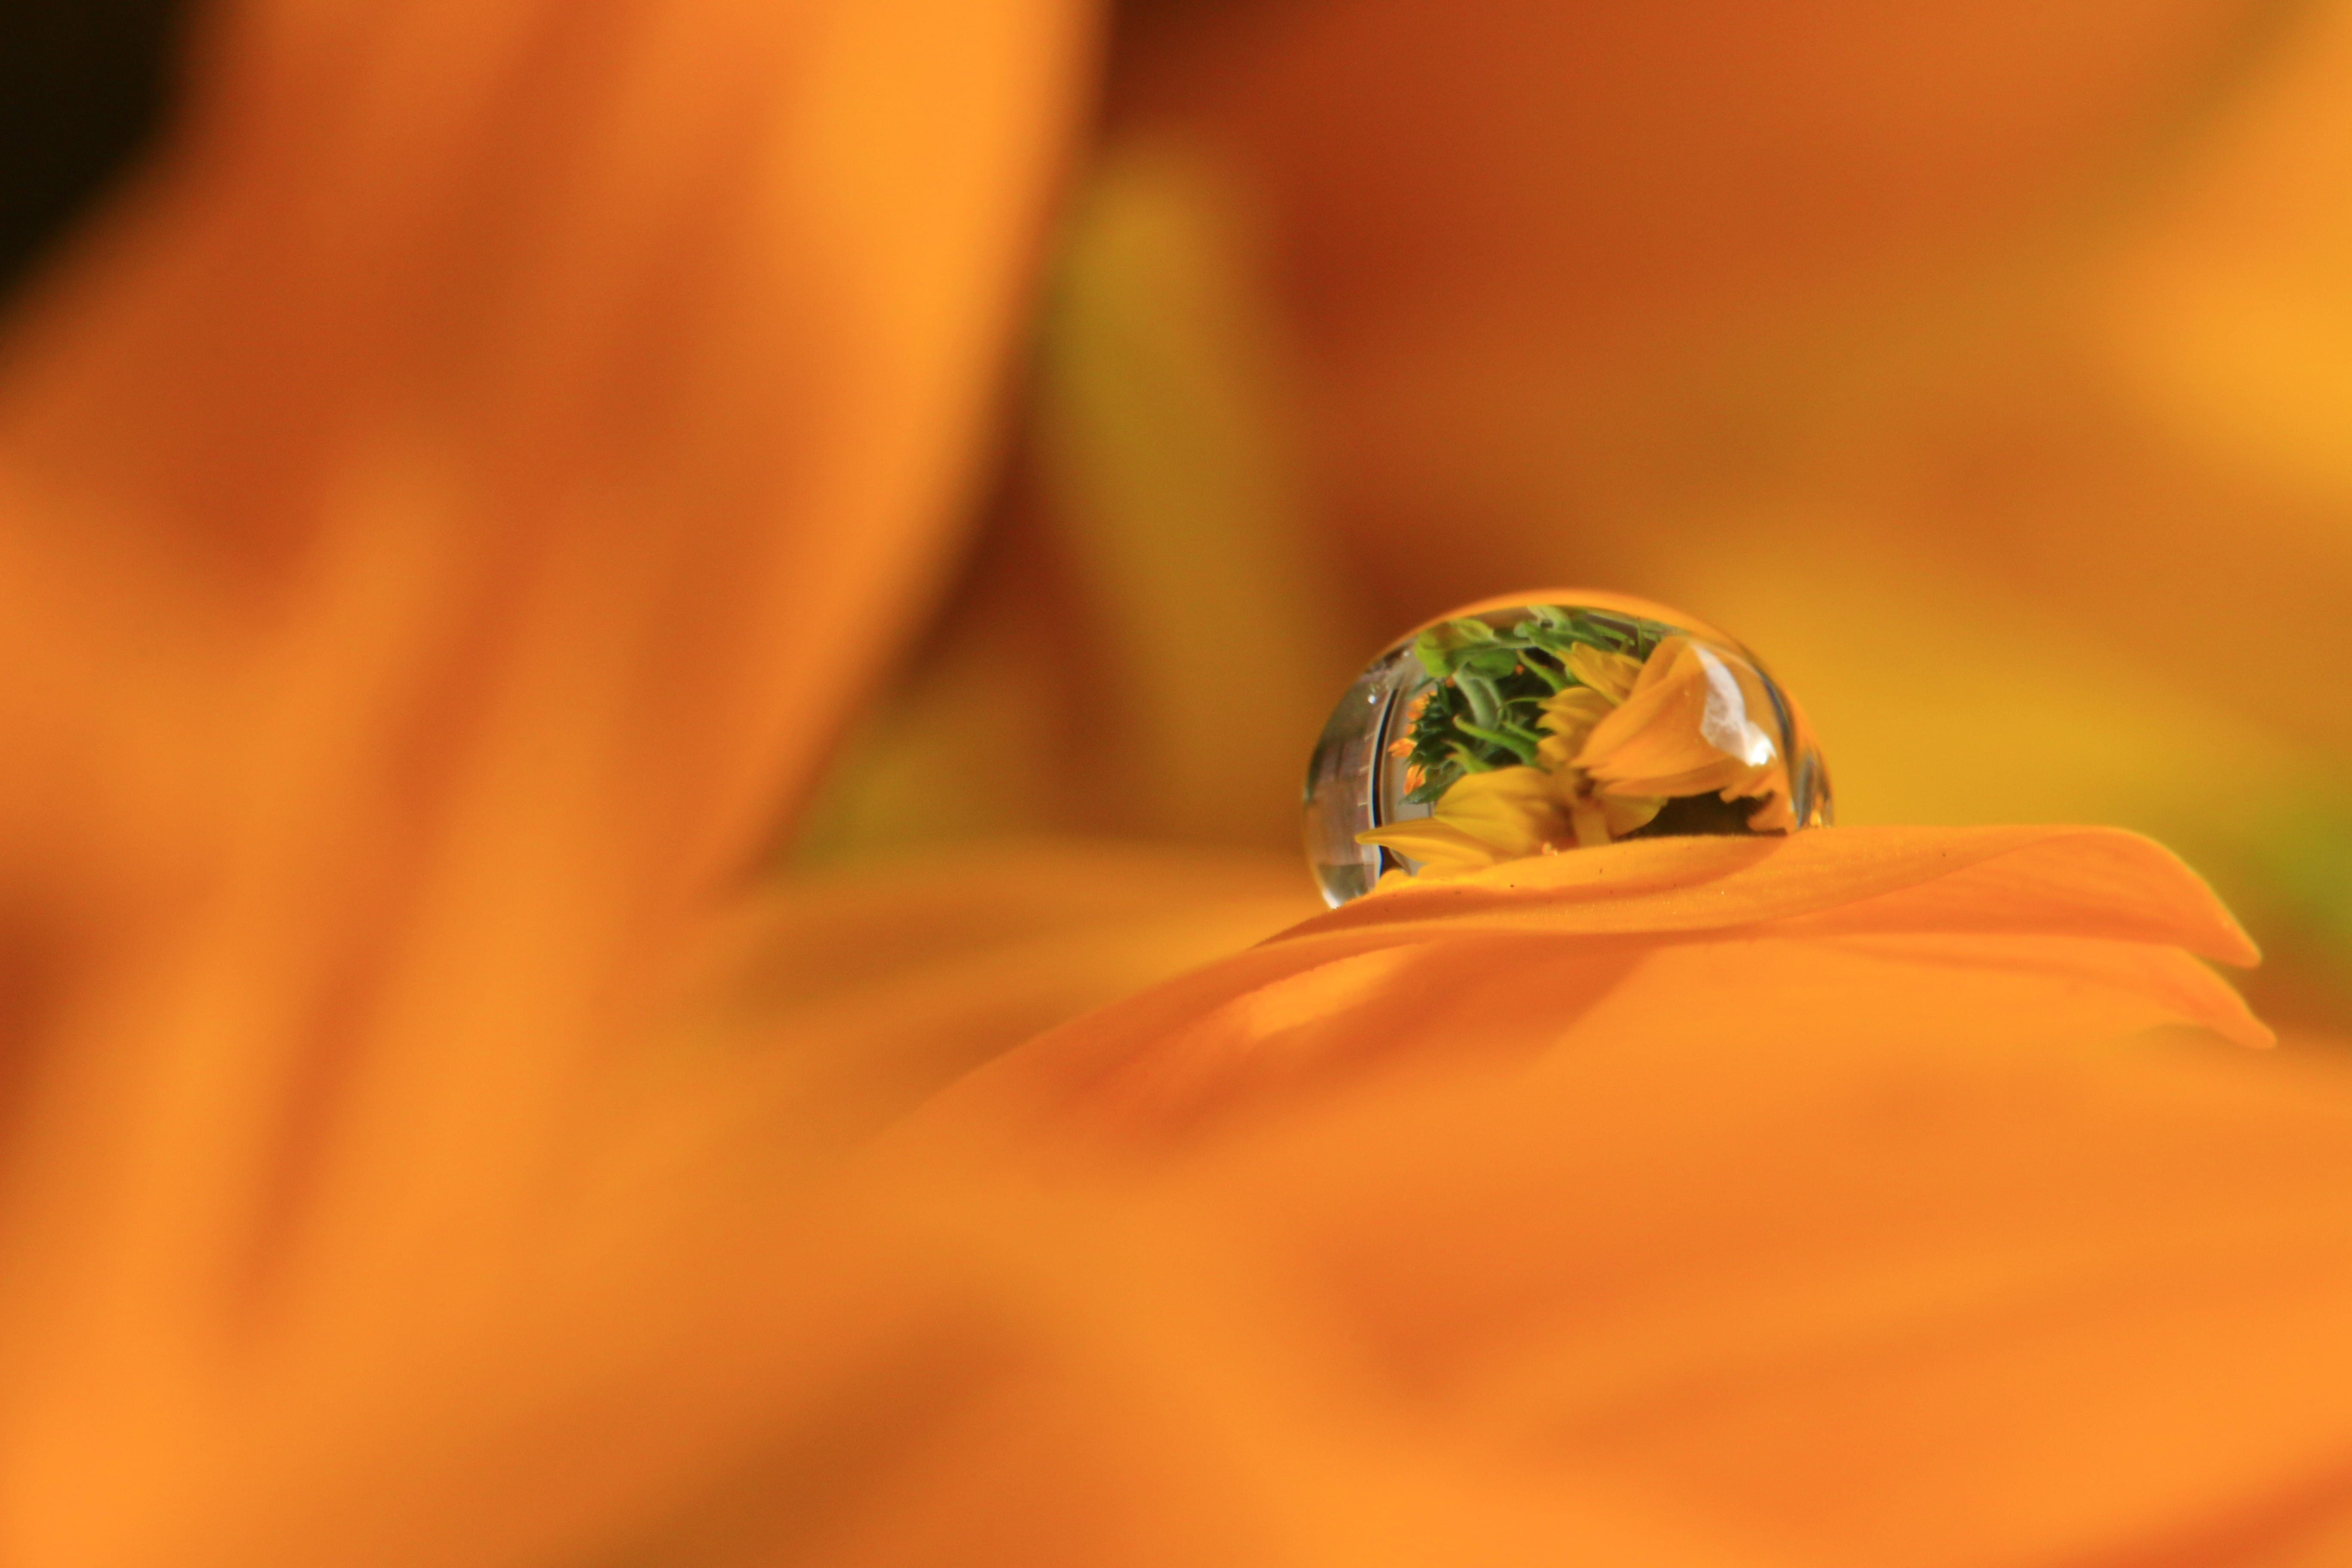 A drop of water on an orange petal.